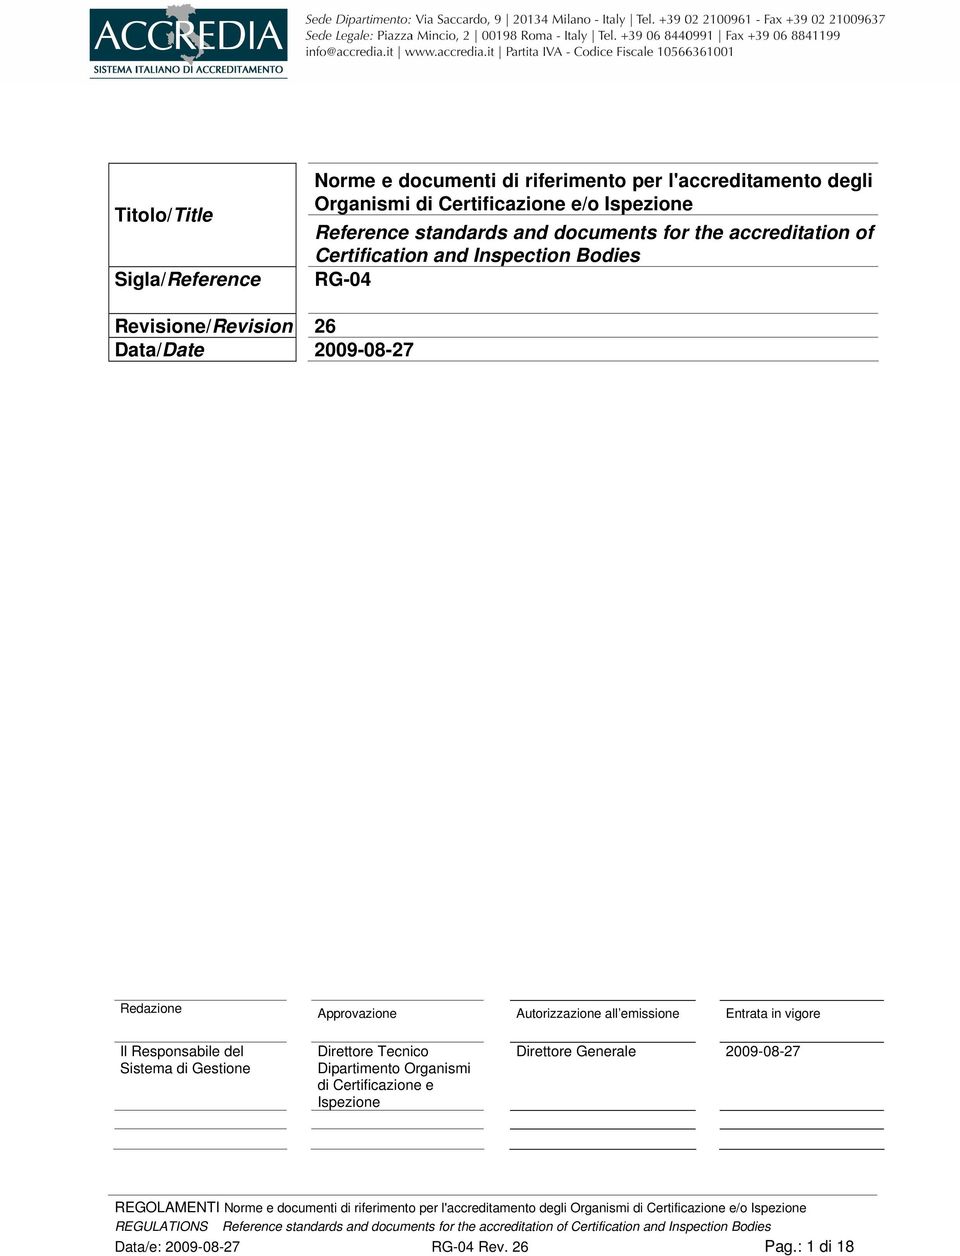 2009-08-27 Redazione Approvazione Autorizzazione all emissione Entrata in vigore Il Responsabile del Sistema di Gestione Direttore